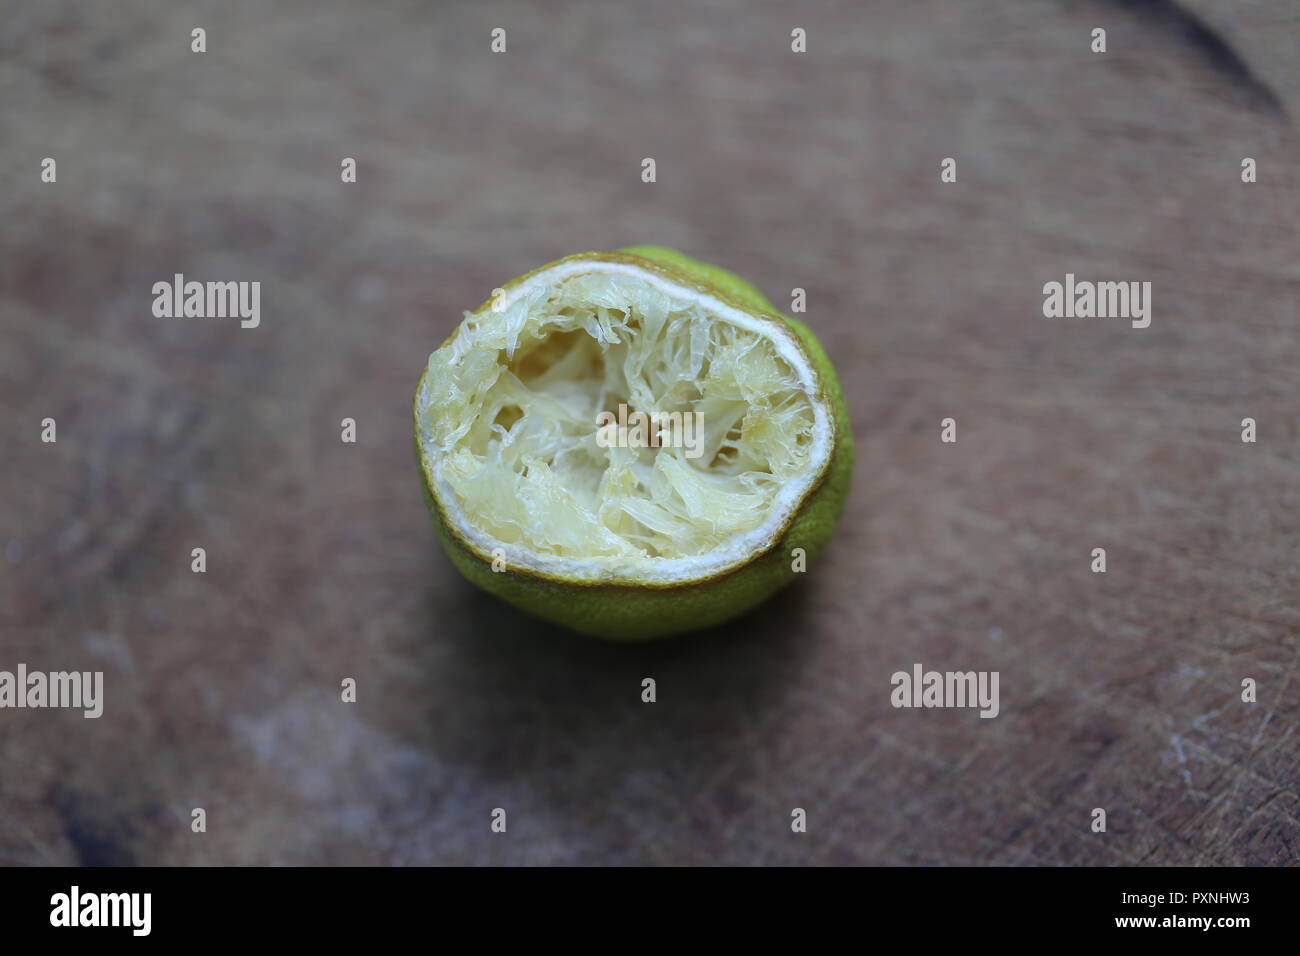 Half A Dry Lemon. Half squeezed lemon fruit, close up. Stock Photo